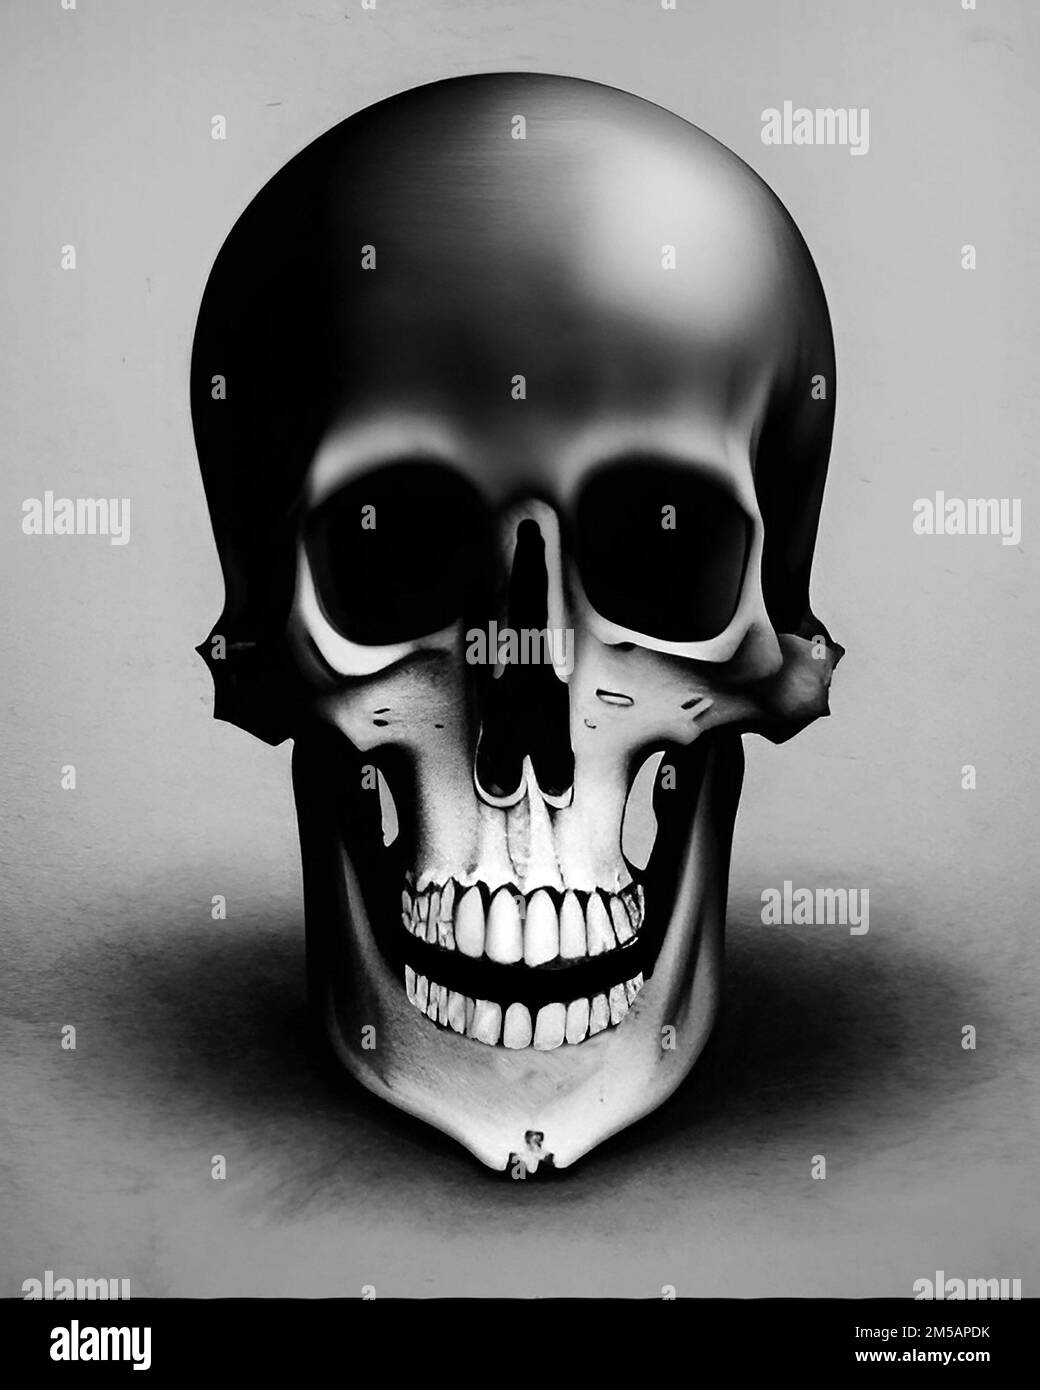 Crâne sombre entouré d'une ombre, illustration effrayante. Concept de mort Banque D'Images